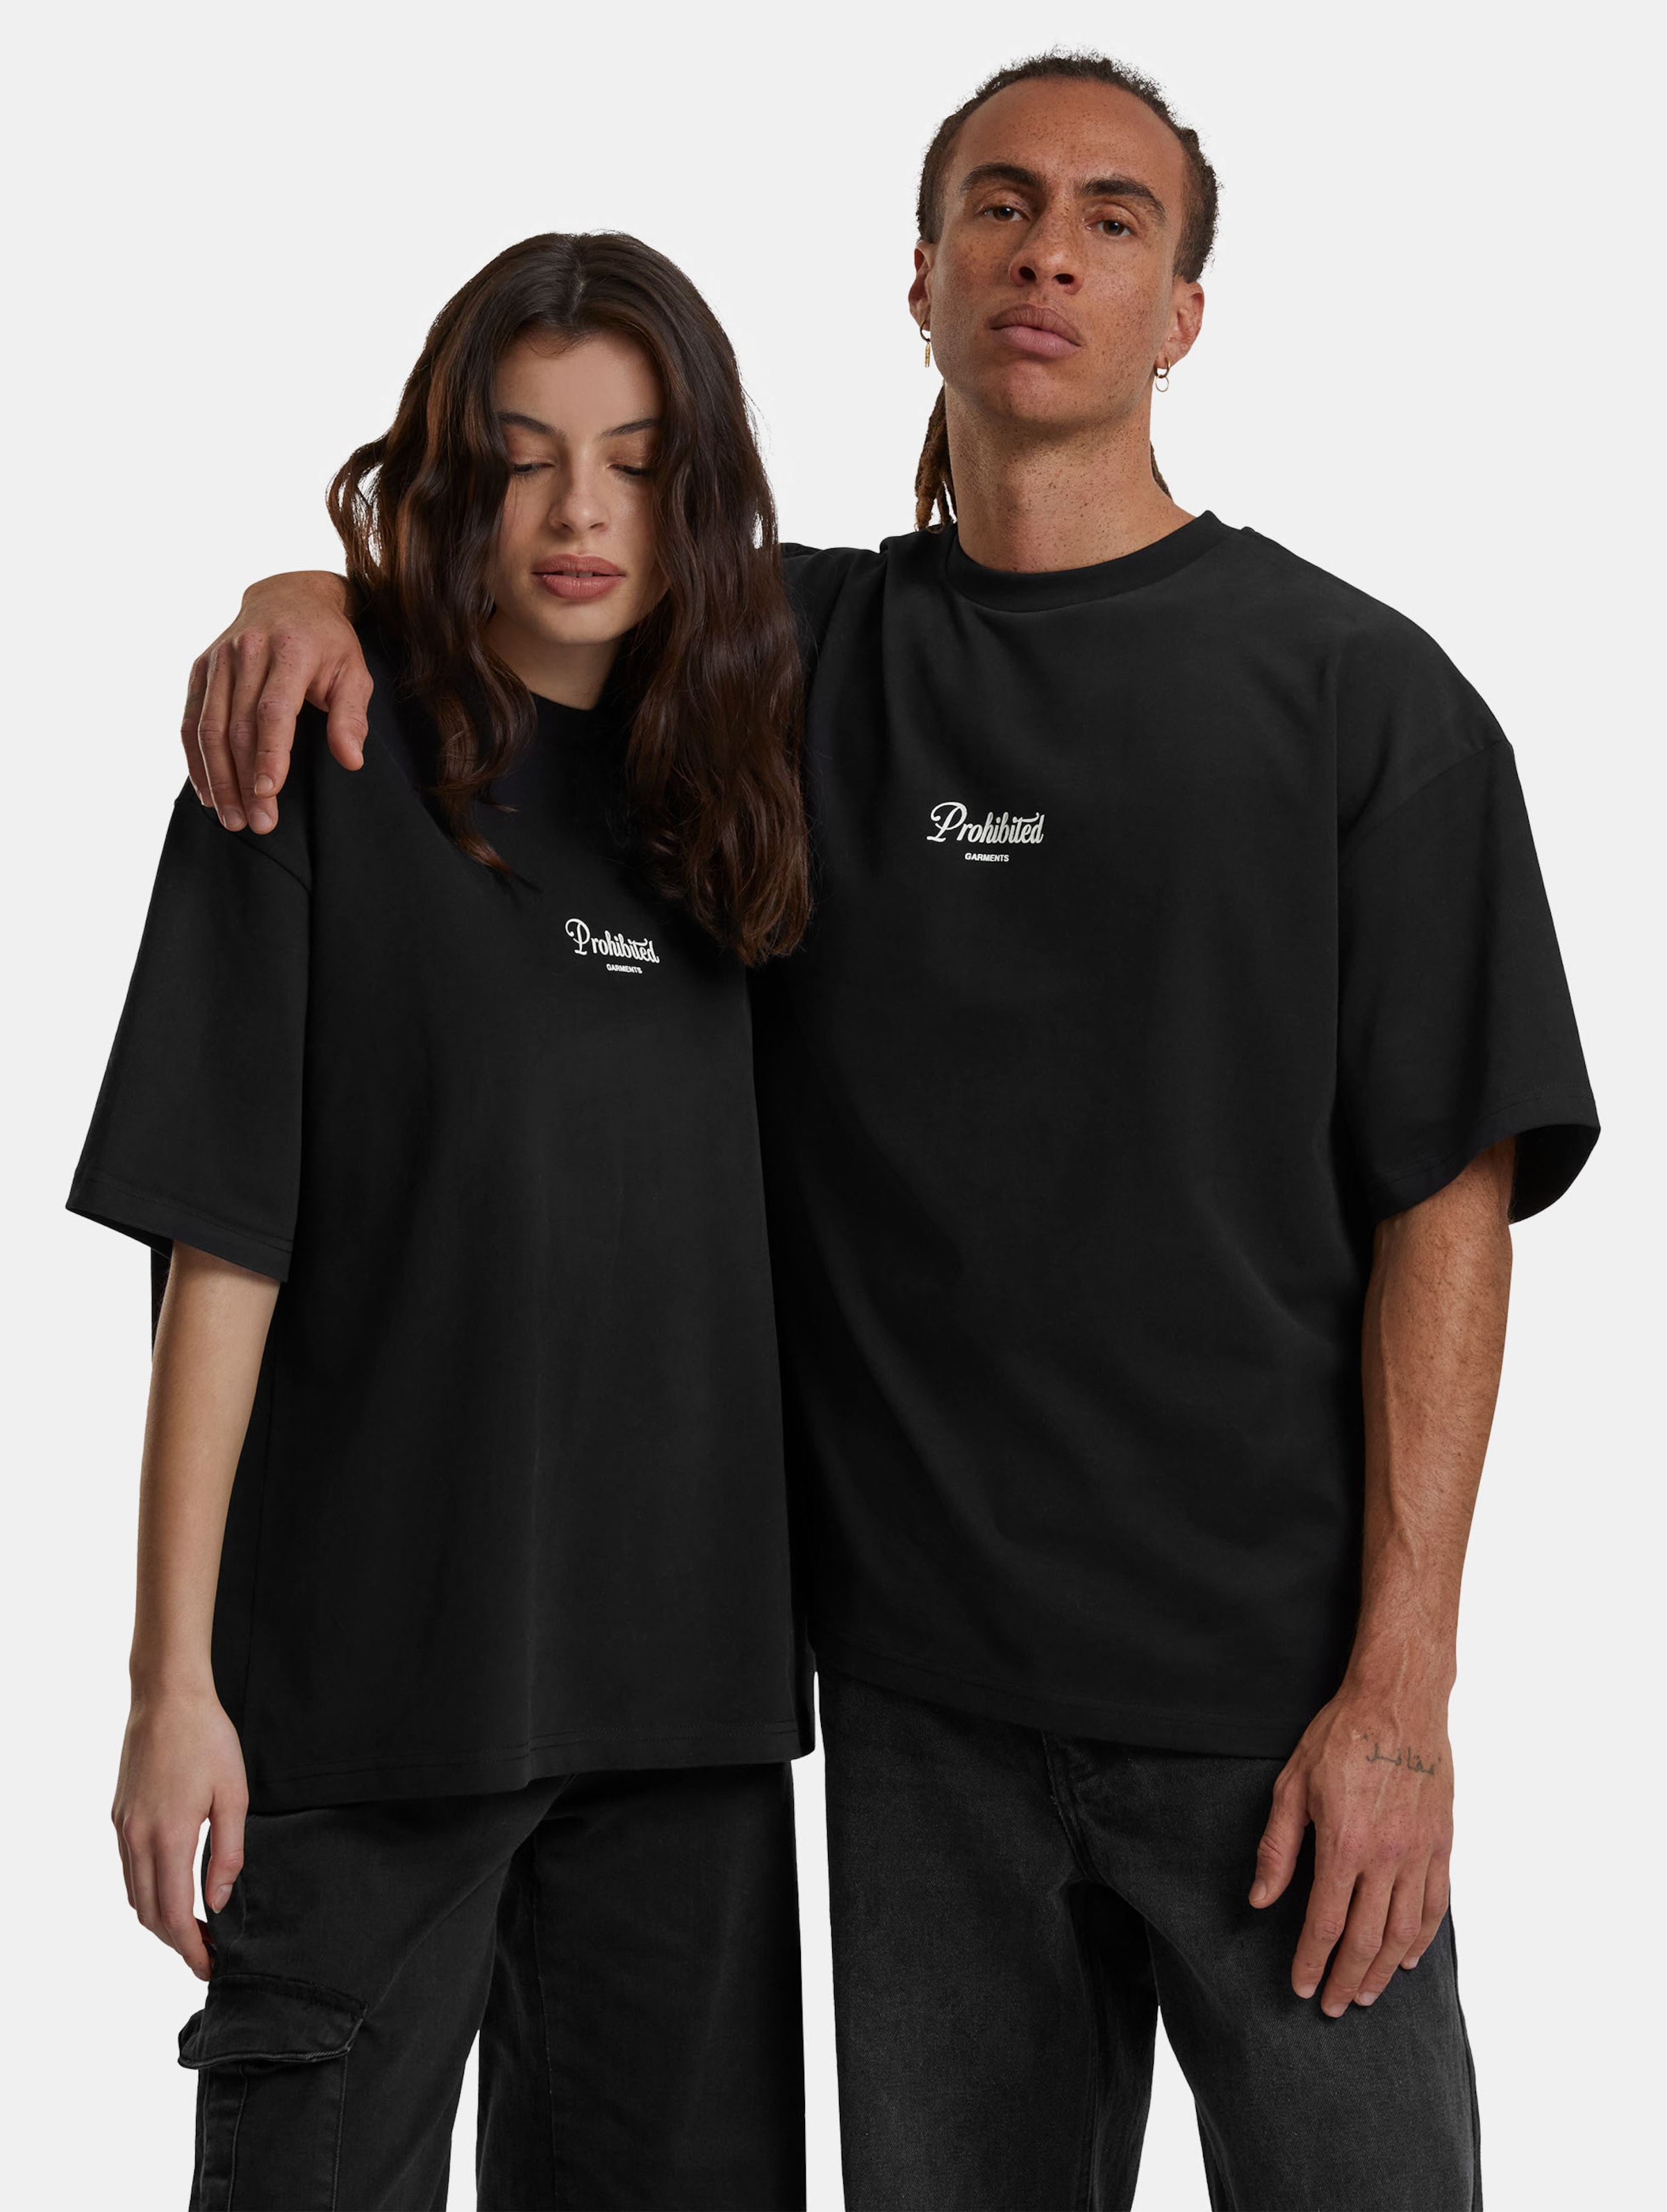 Prohibited PB Garment T Shirts Frauen,Männer,Unisex op kleur zwart, Maat XXL